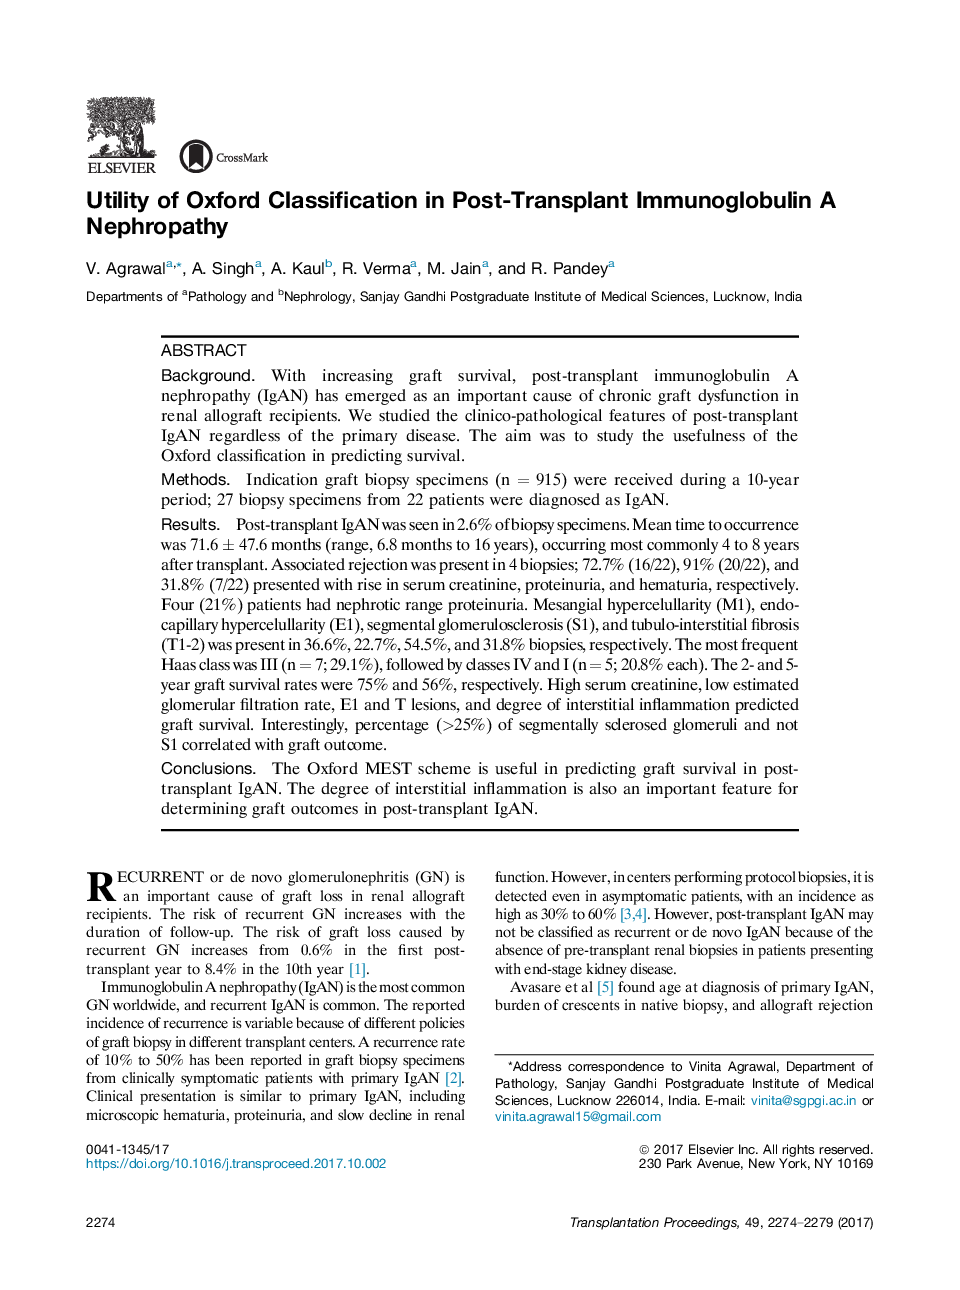 Utility of Oxford Classification in Post-Transplant Immunoglobulin A Nephropathy